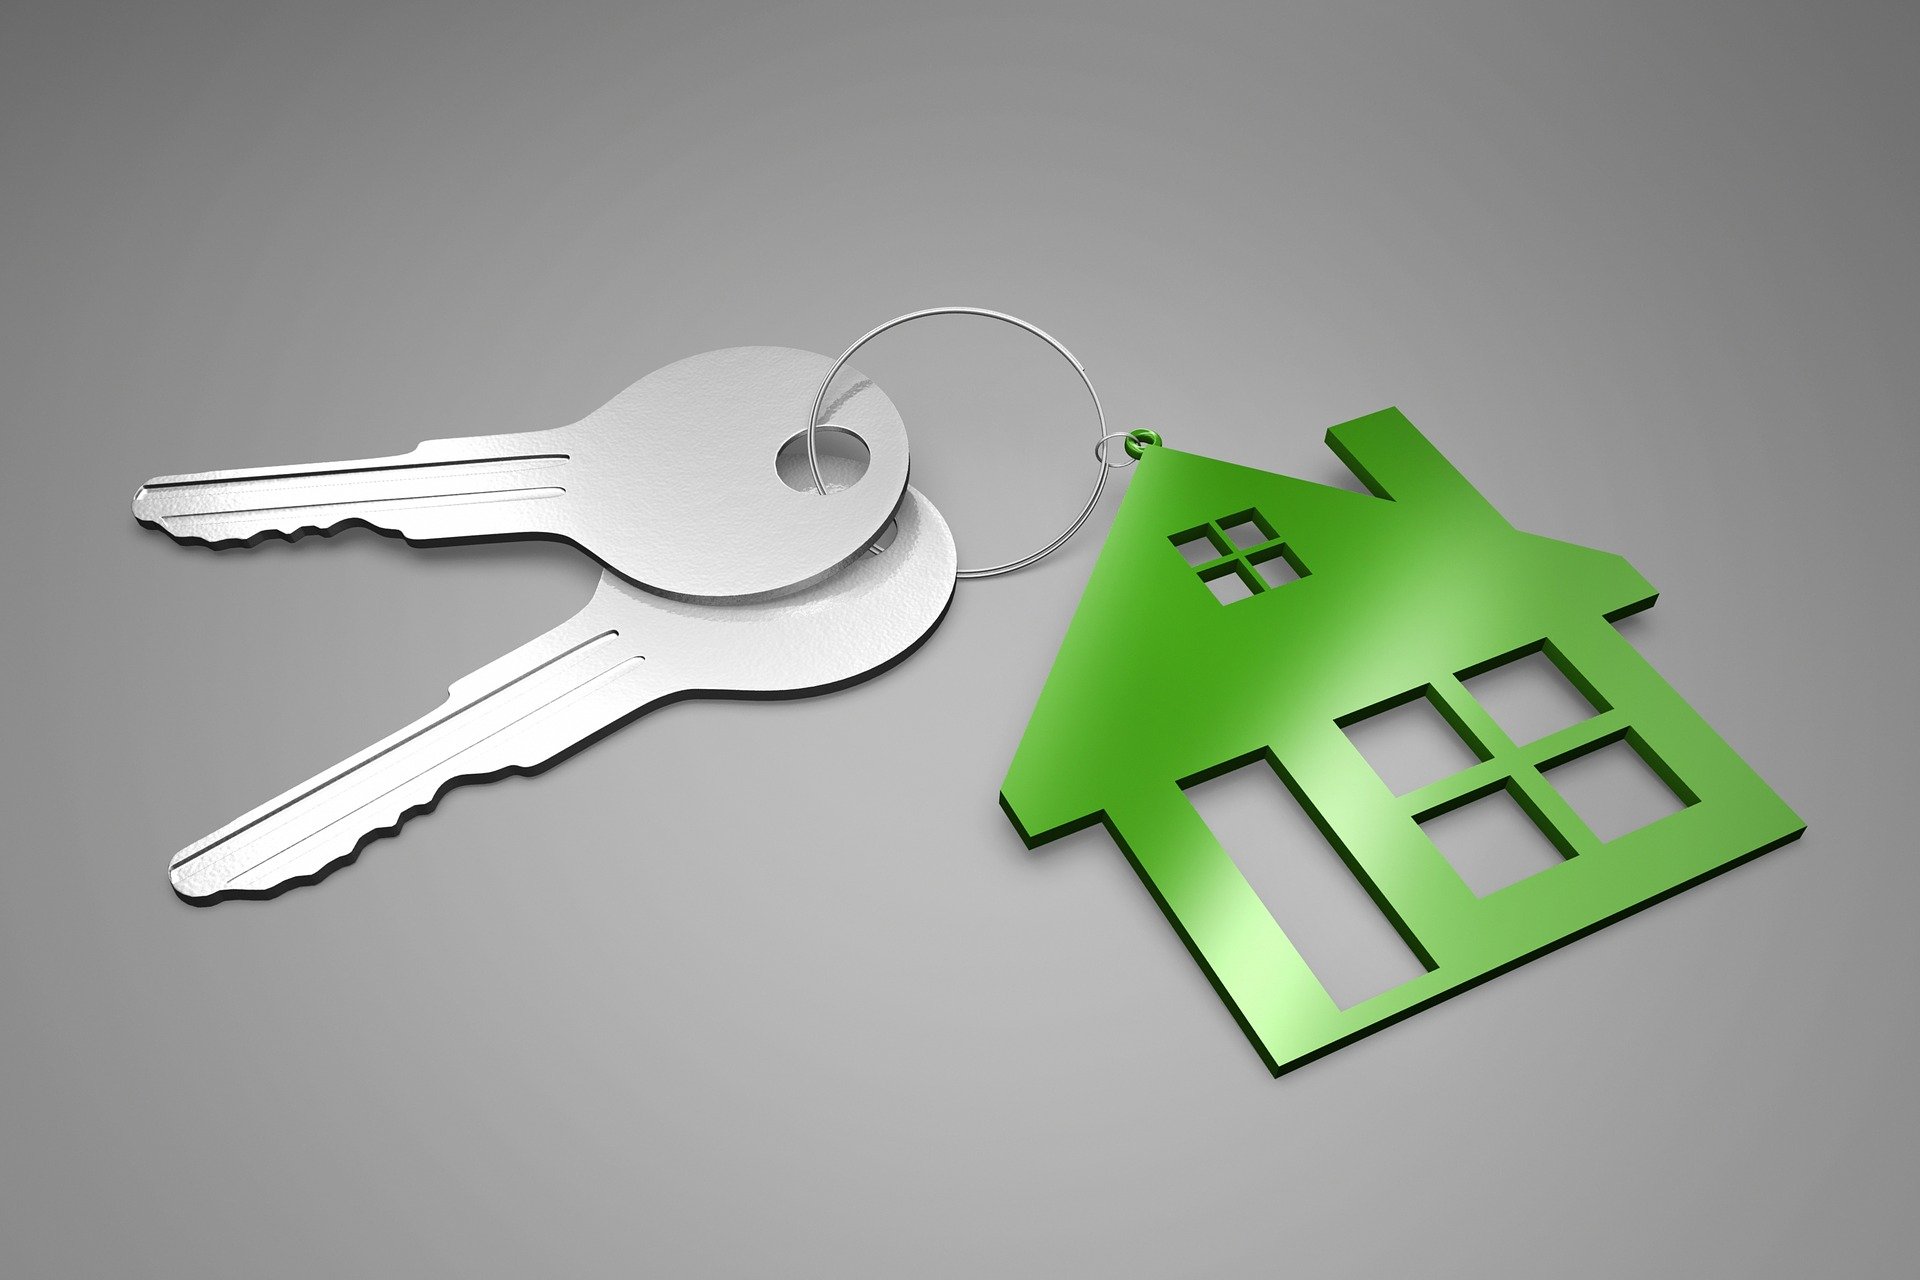 Två nycklar och en grön nyckelbricka som liknar ett hus